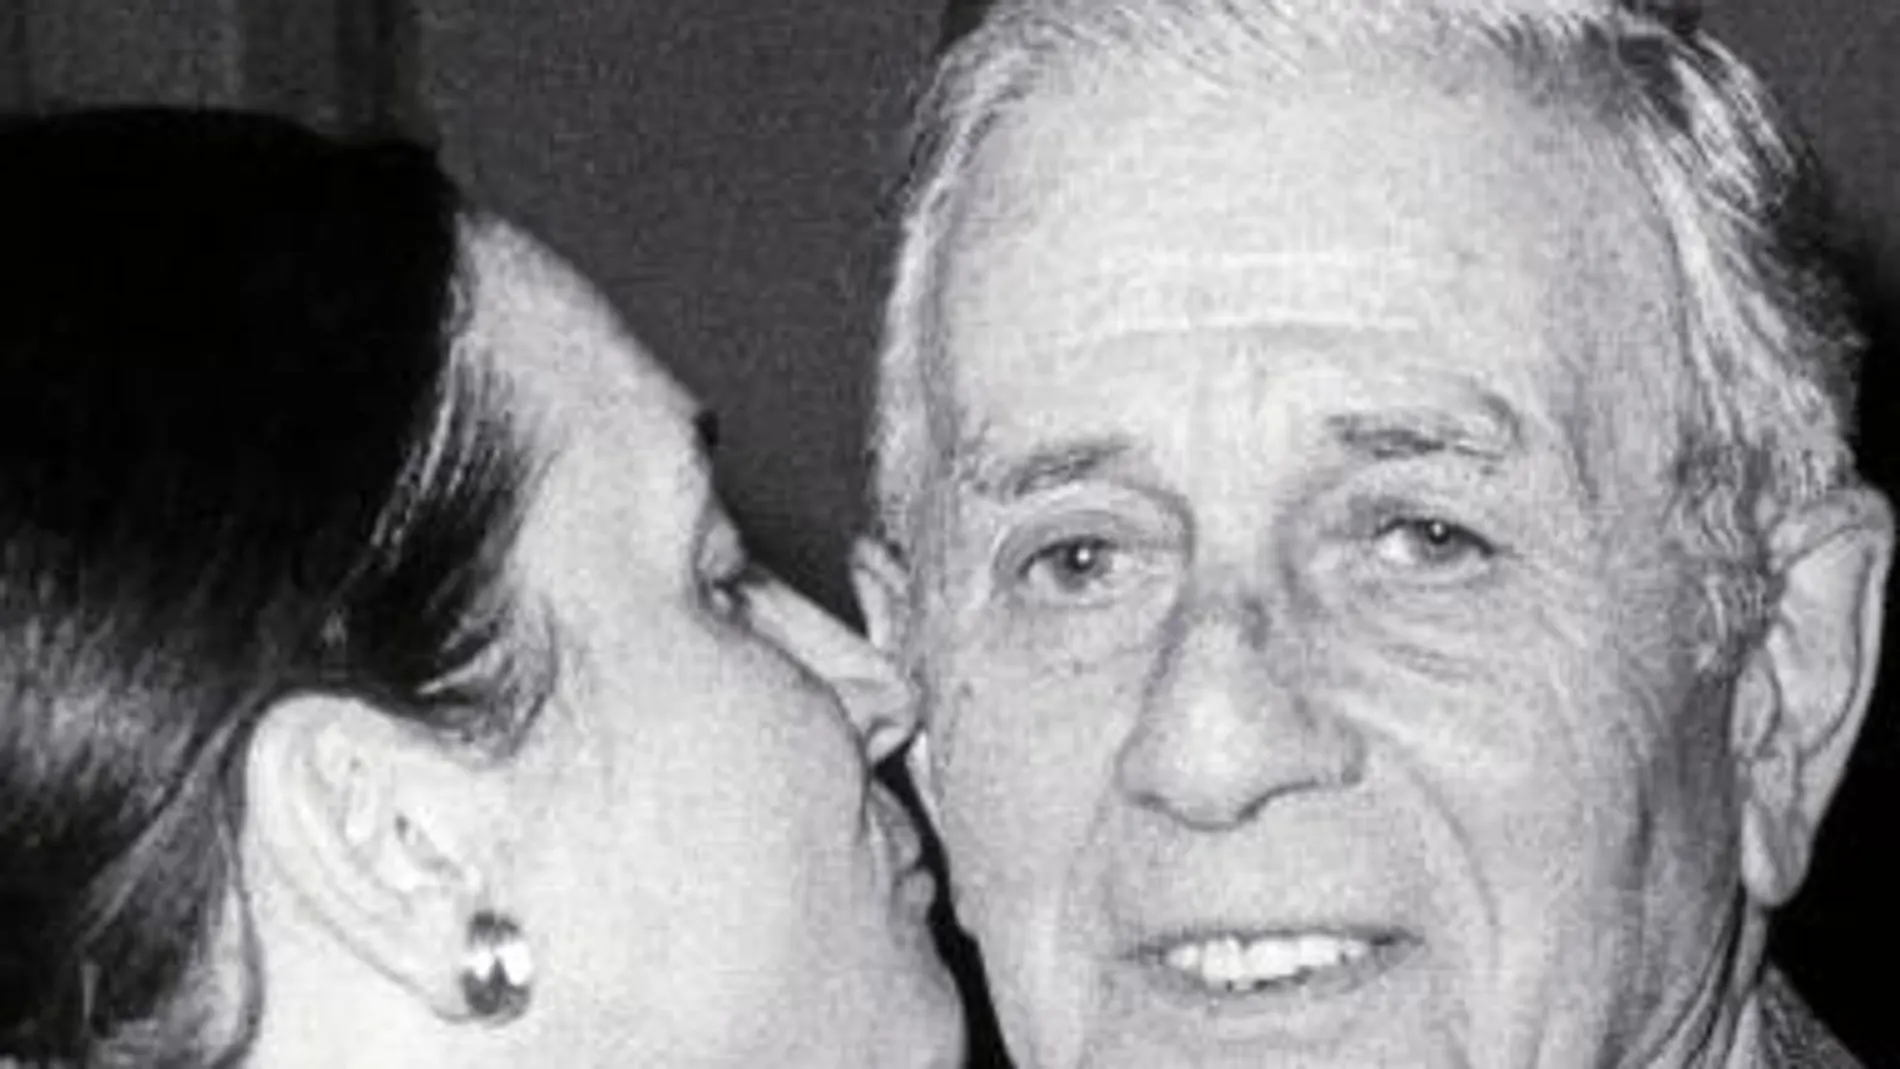 Marta Ferrusola, esposa de Jordi Pujol, besa a su suegro, Florencio Pujol, tras la elección de su marido como presidente en abril de 1980